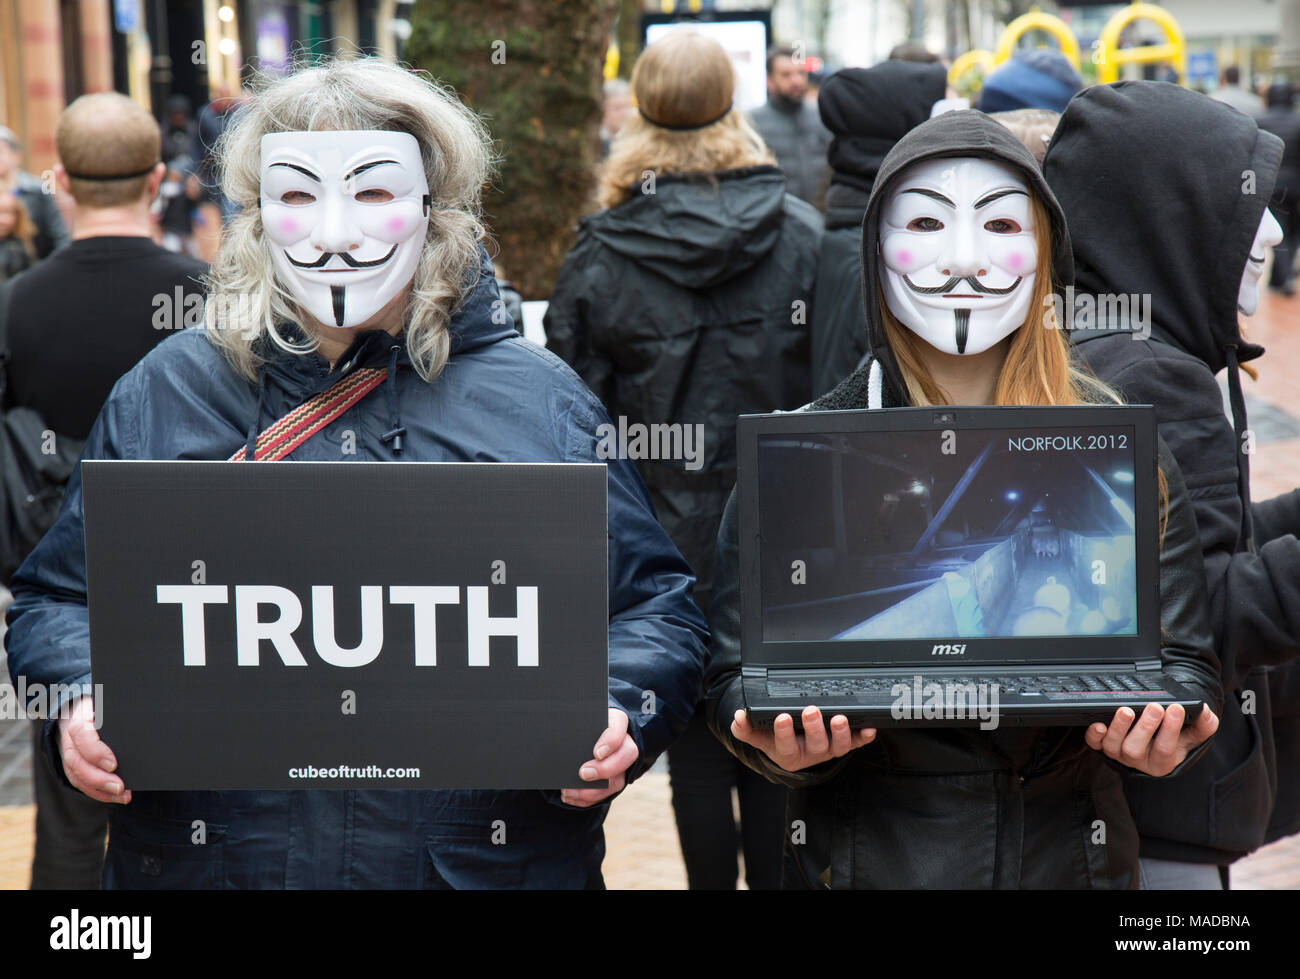 Un grupo de activistas de los derechos de los animales en el centro de la ciudad de Birmingham, Inglaterra. El tipo de Guy Fawkes llevaban máscaras y portaban carteles con la palabra "verdad" Foto de stock